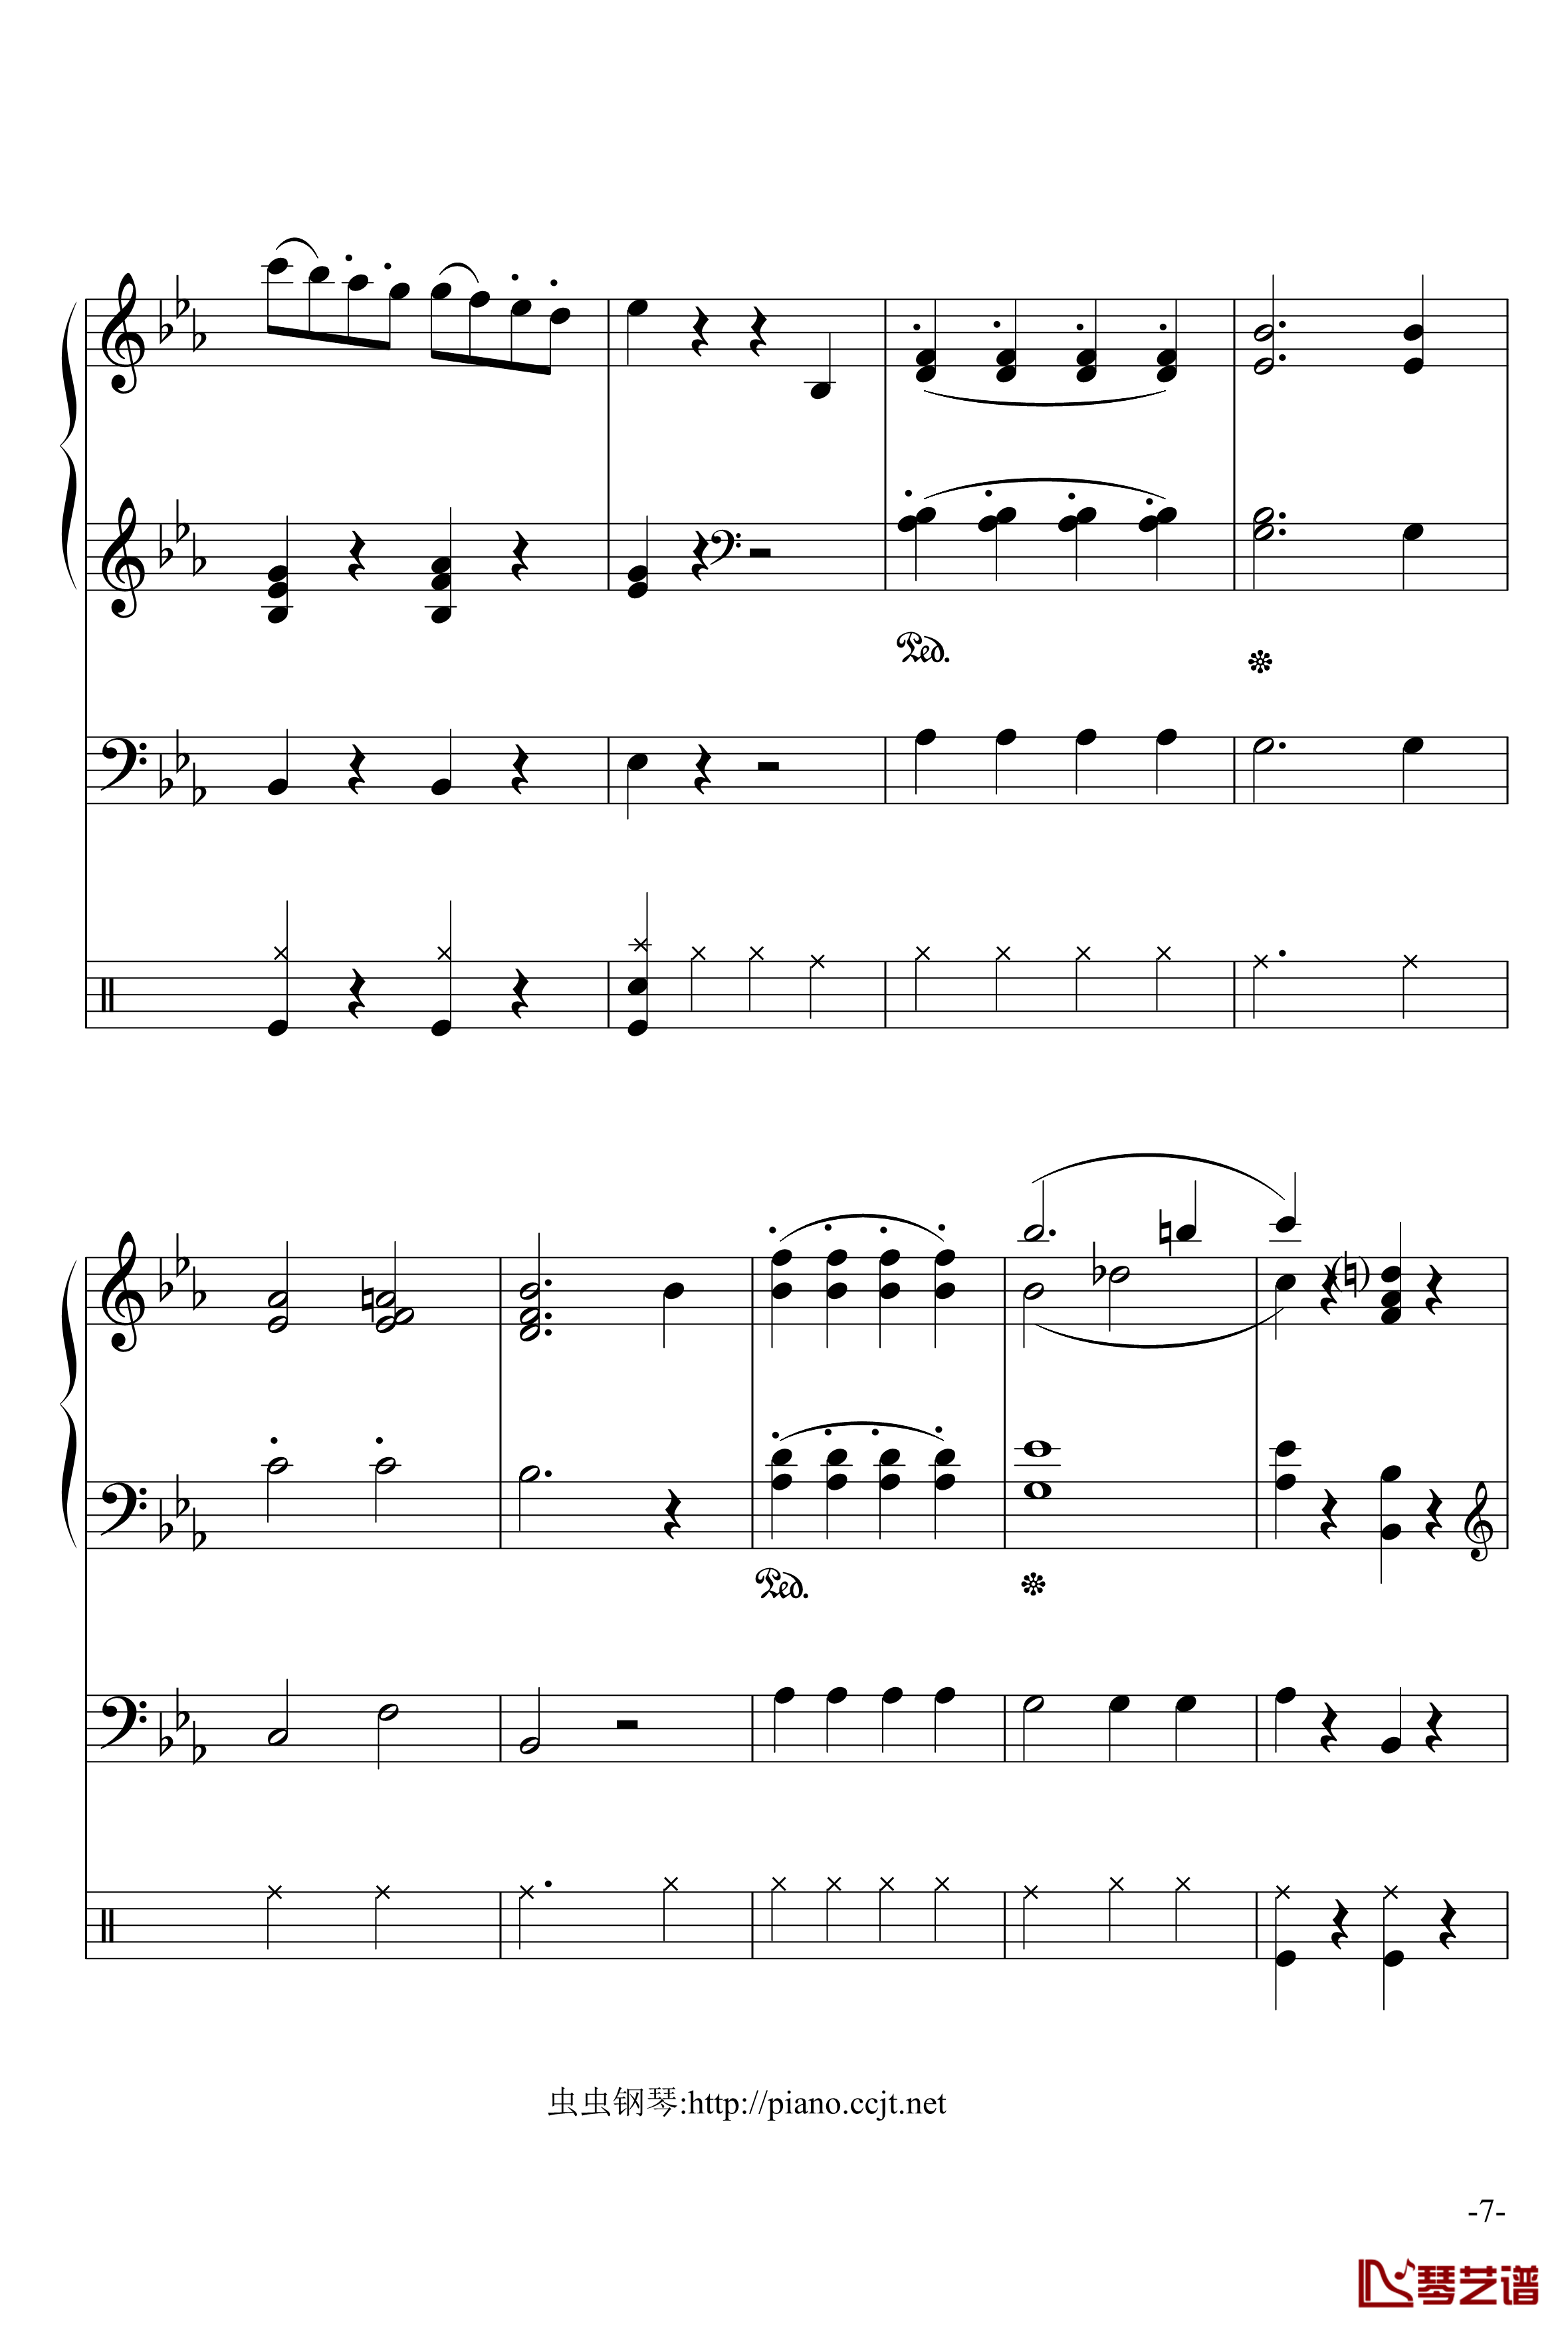 悲怆奏鸣曲钢琴谱-加小乐队-贝多芬-beethoven7